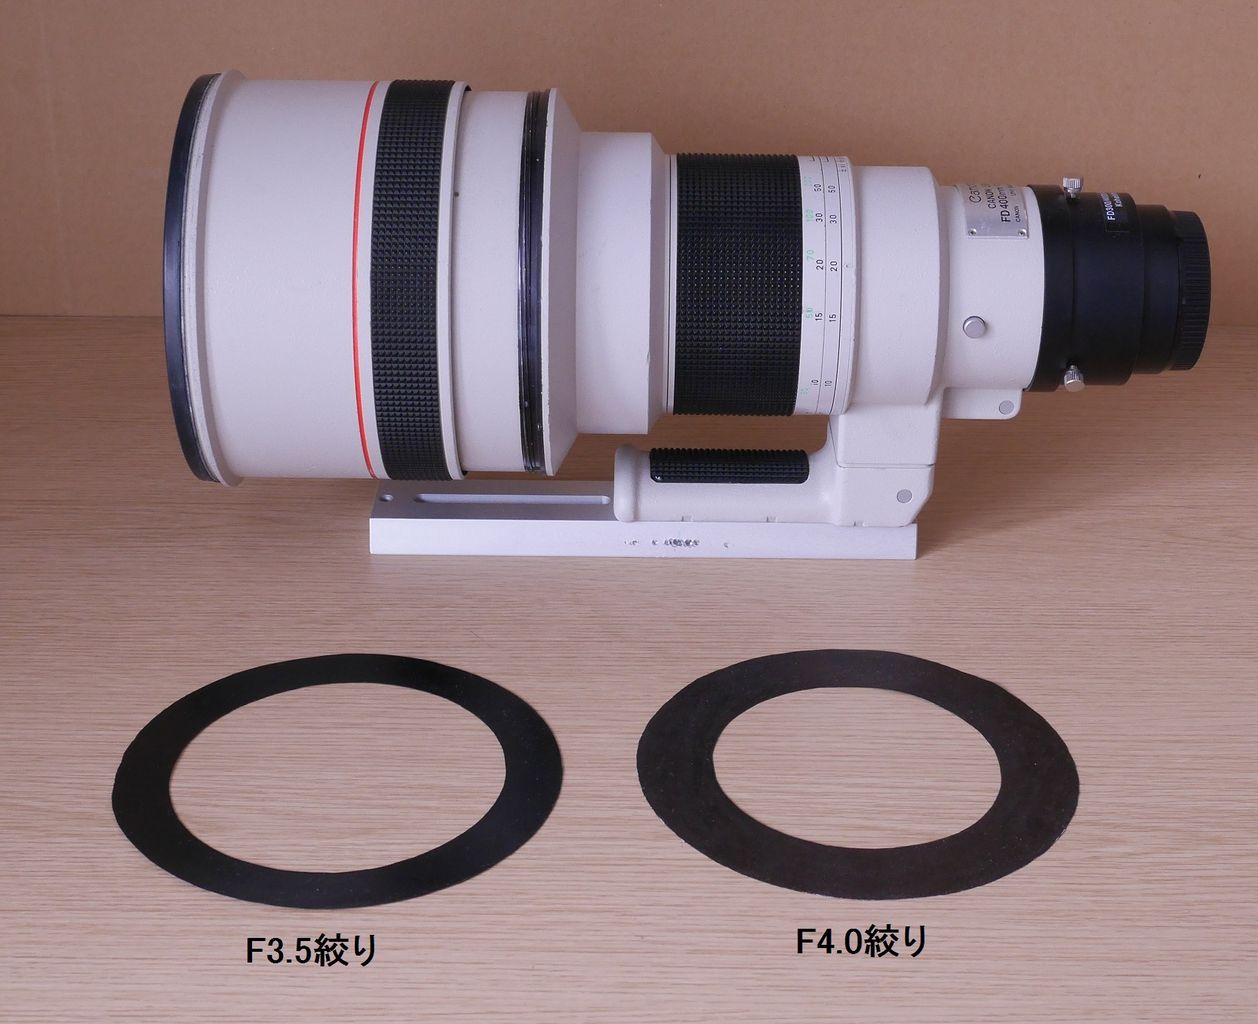 New FD 400mm F2.8L 天体写真テスト : Shio-Gのblog